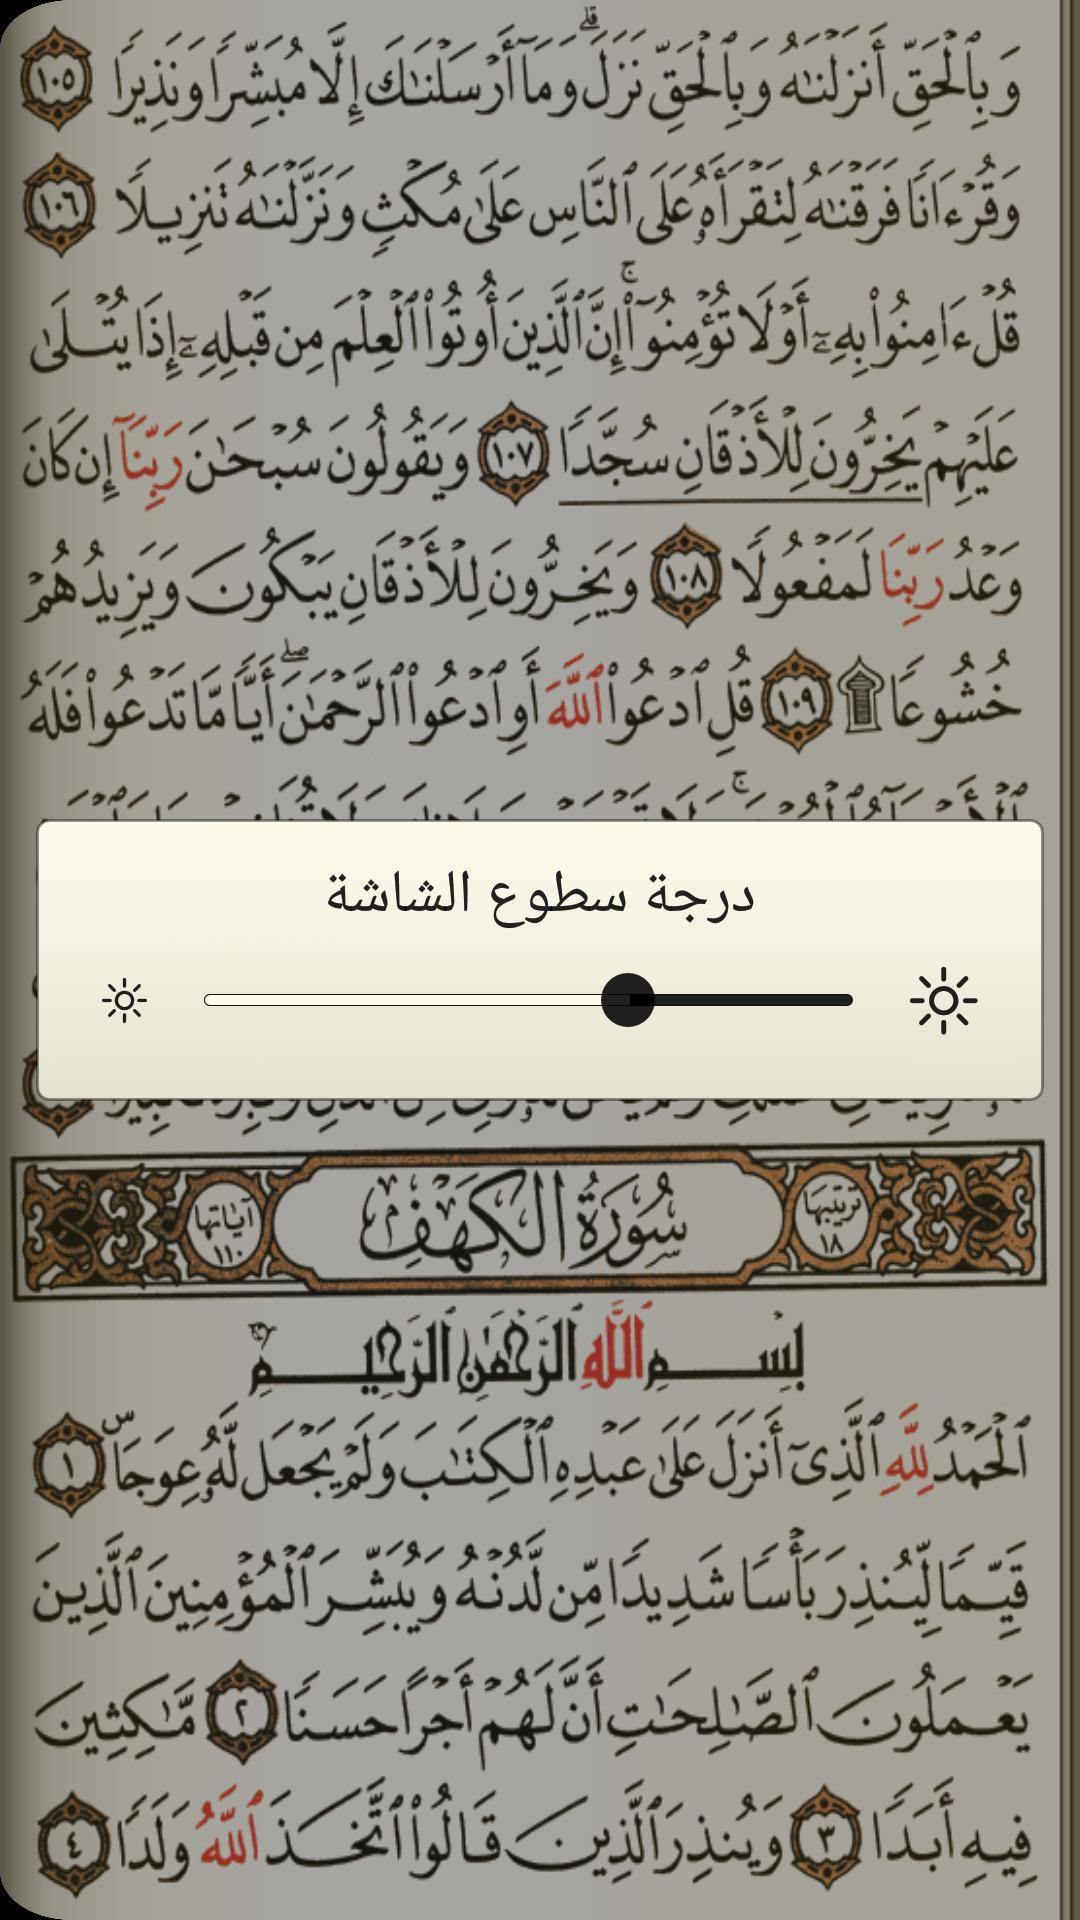 القرآن الكريم مع التفسير وميزات أخرى 6.1 Screenshot 3